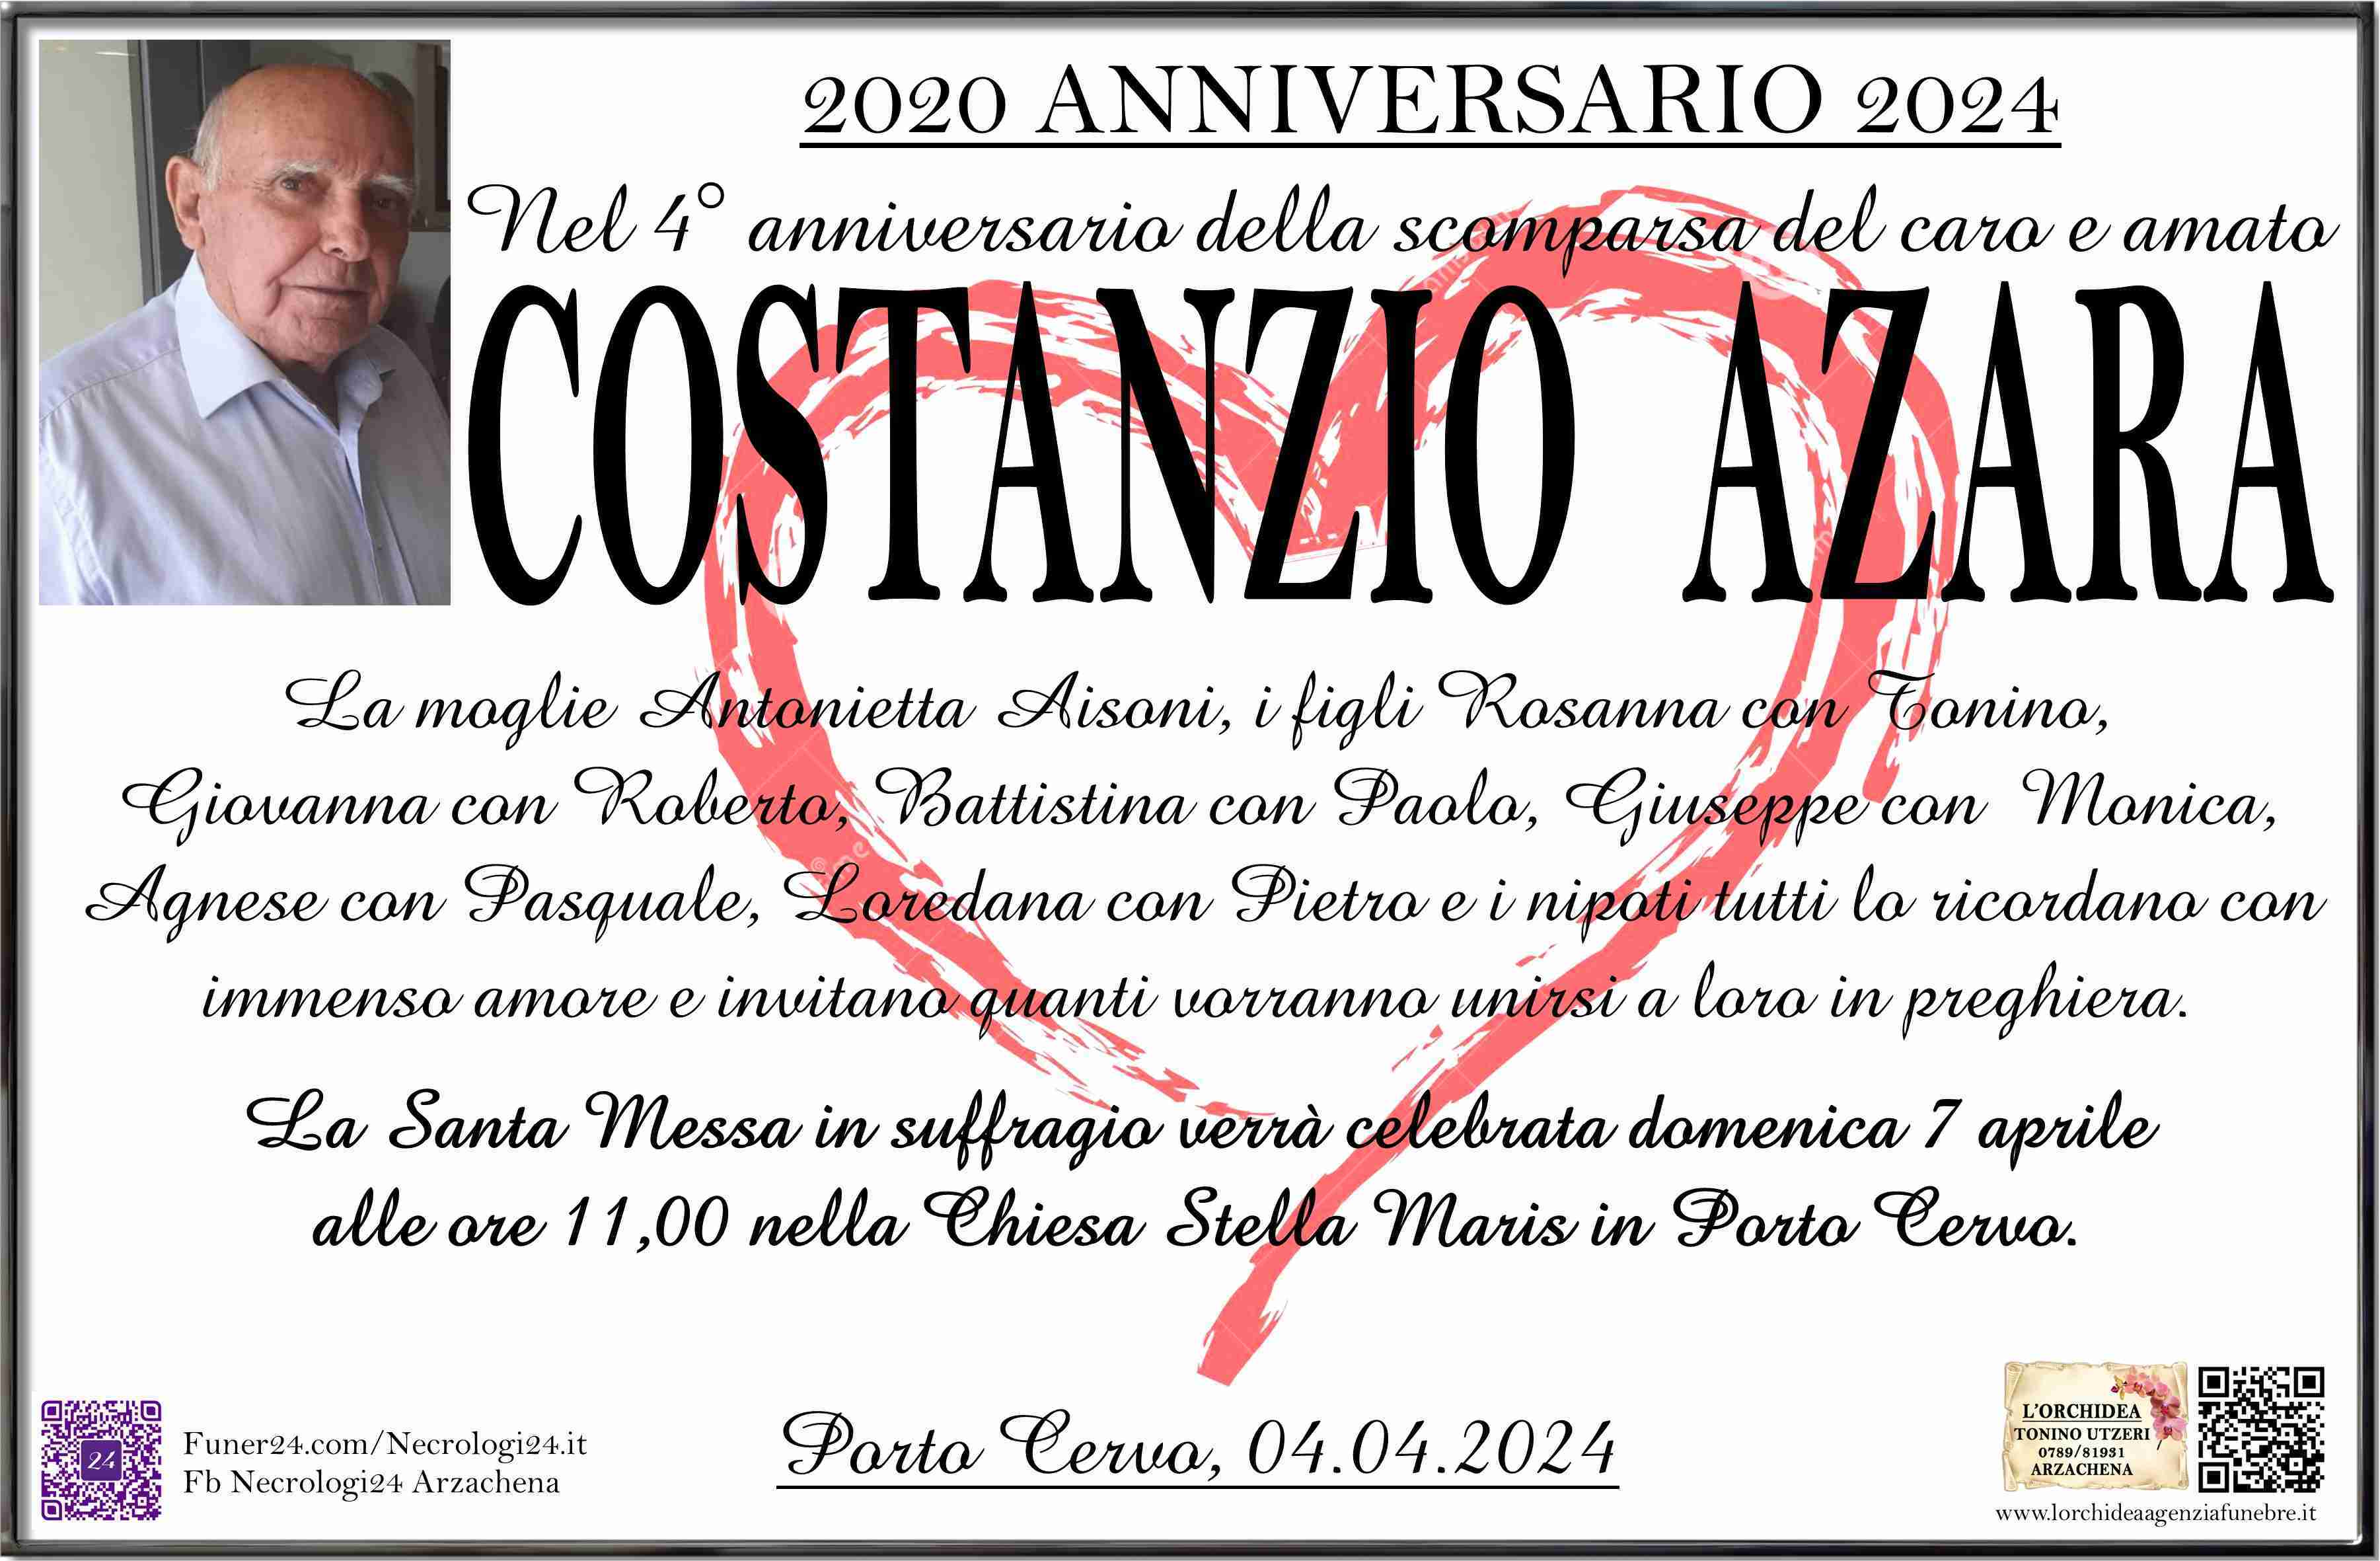 Costanzio Azara